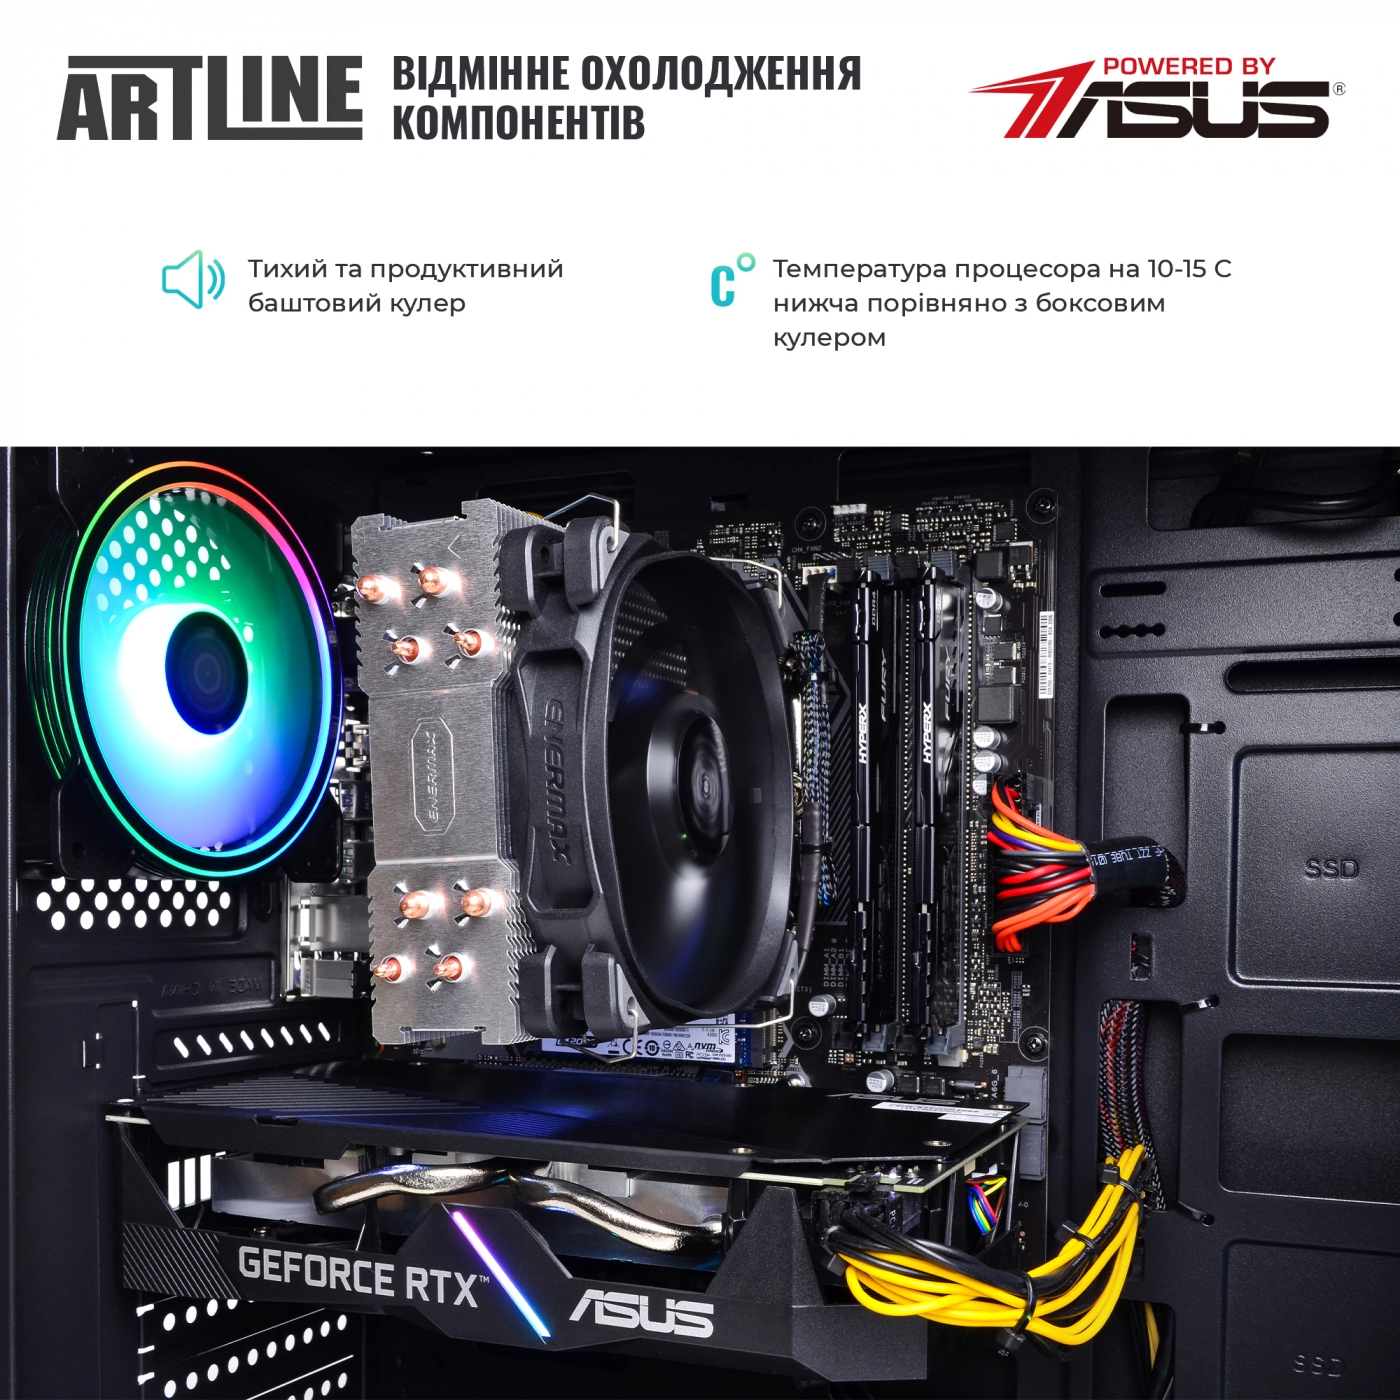 Купить Компьютер ARTLINE Gaming X75v22 - фото 7